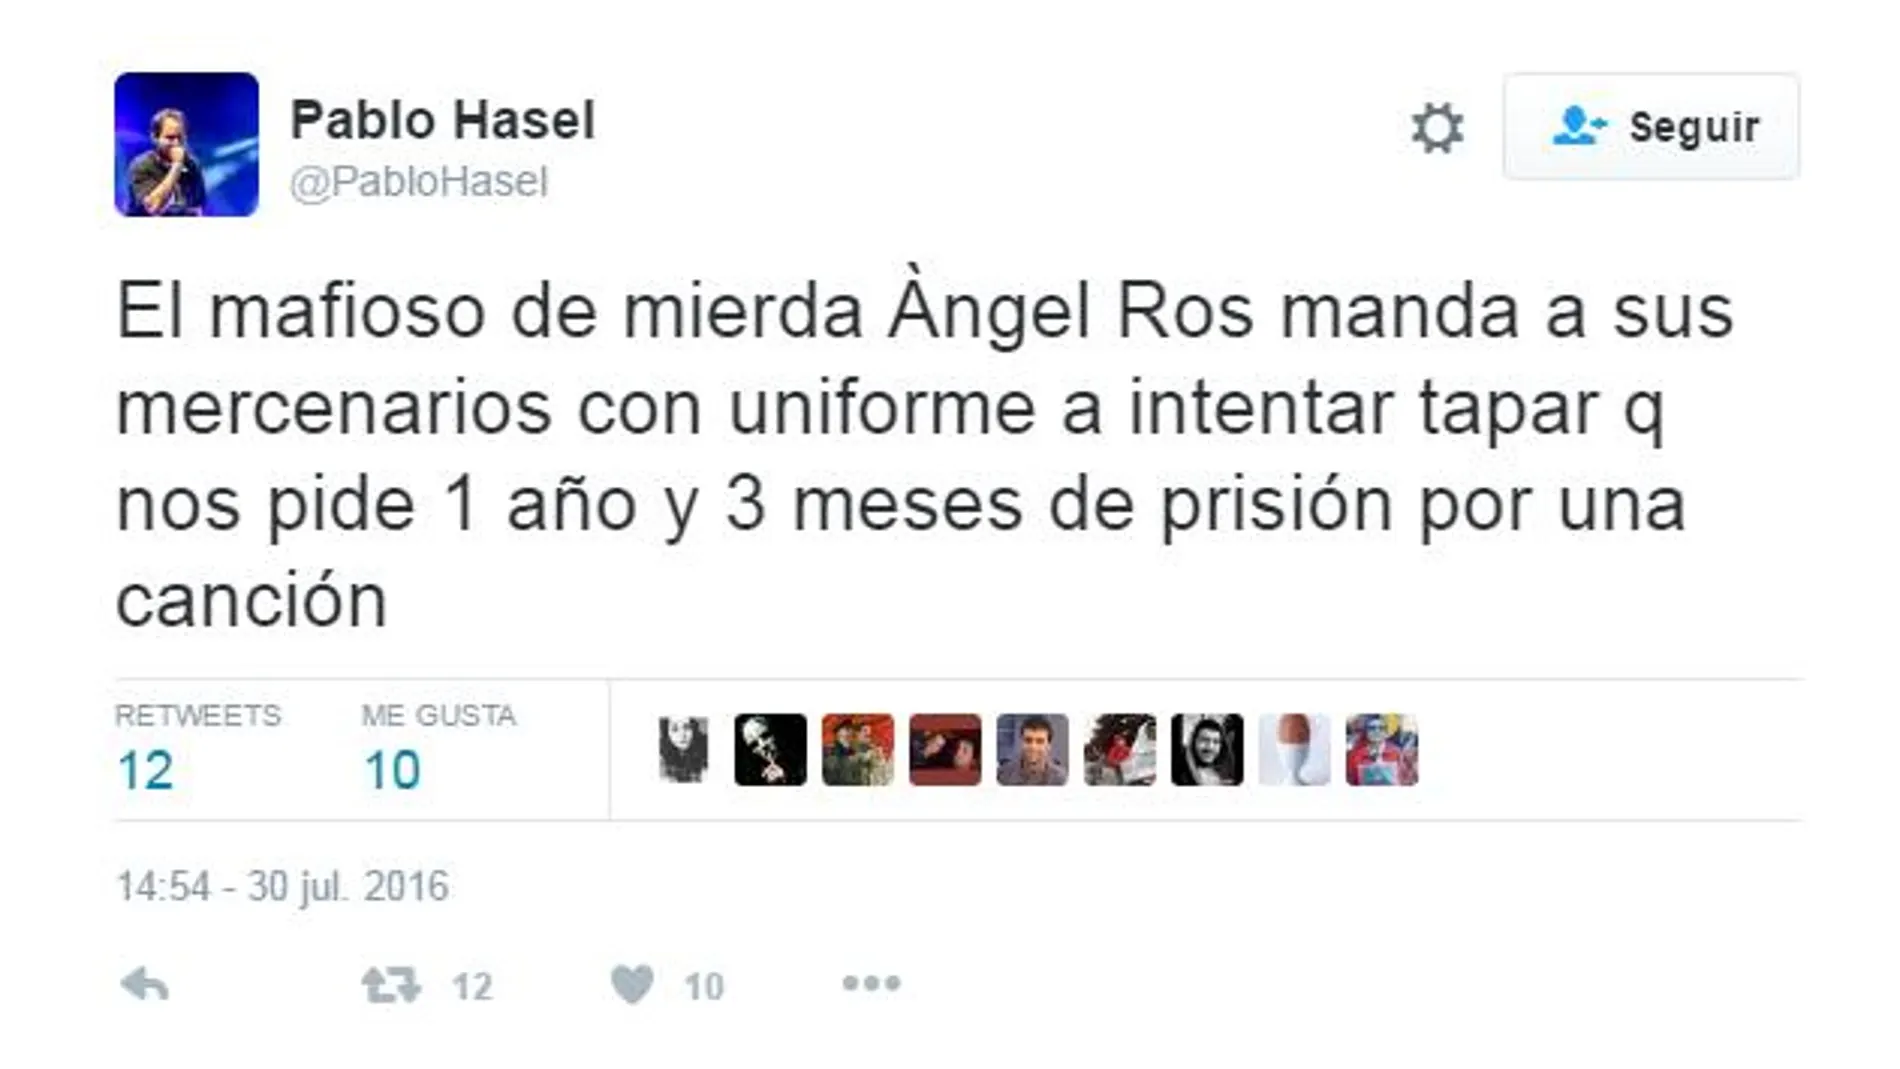 Nueva denuncia de la Fiscalía contra el rapero Pablo Hasel